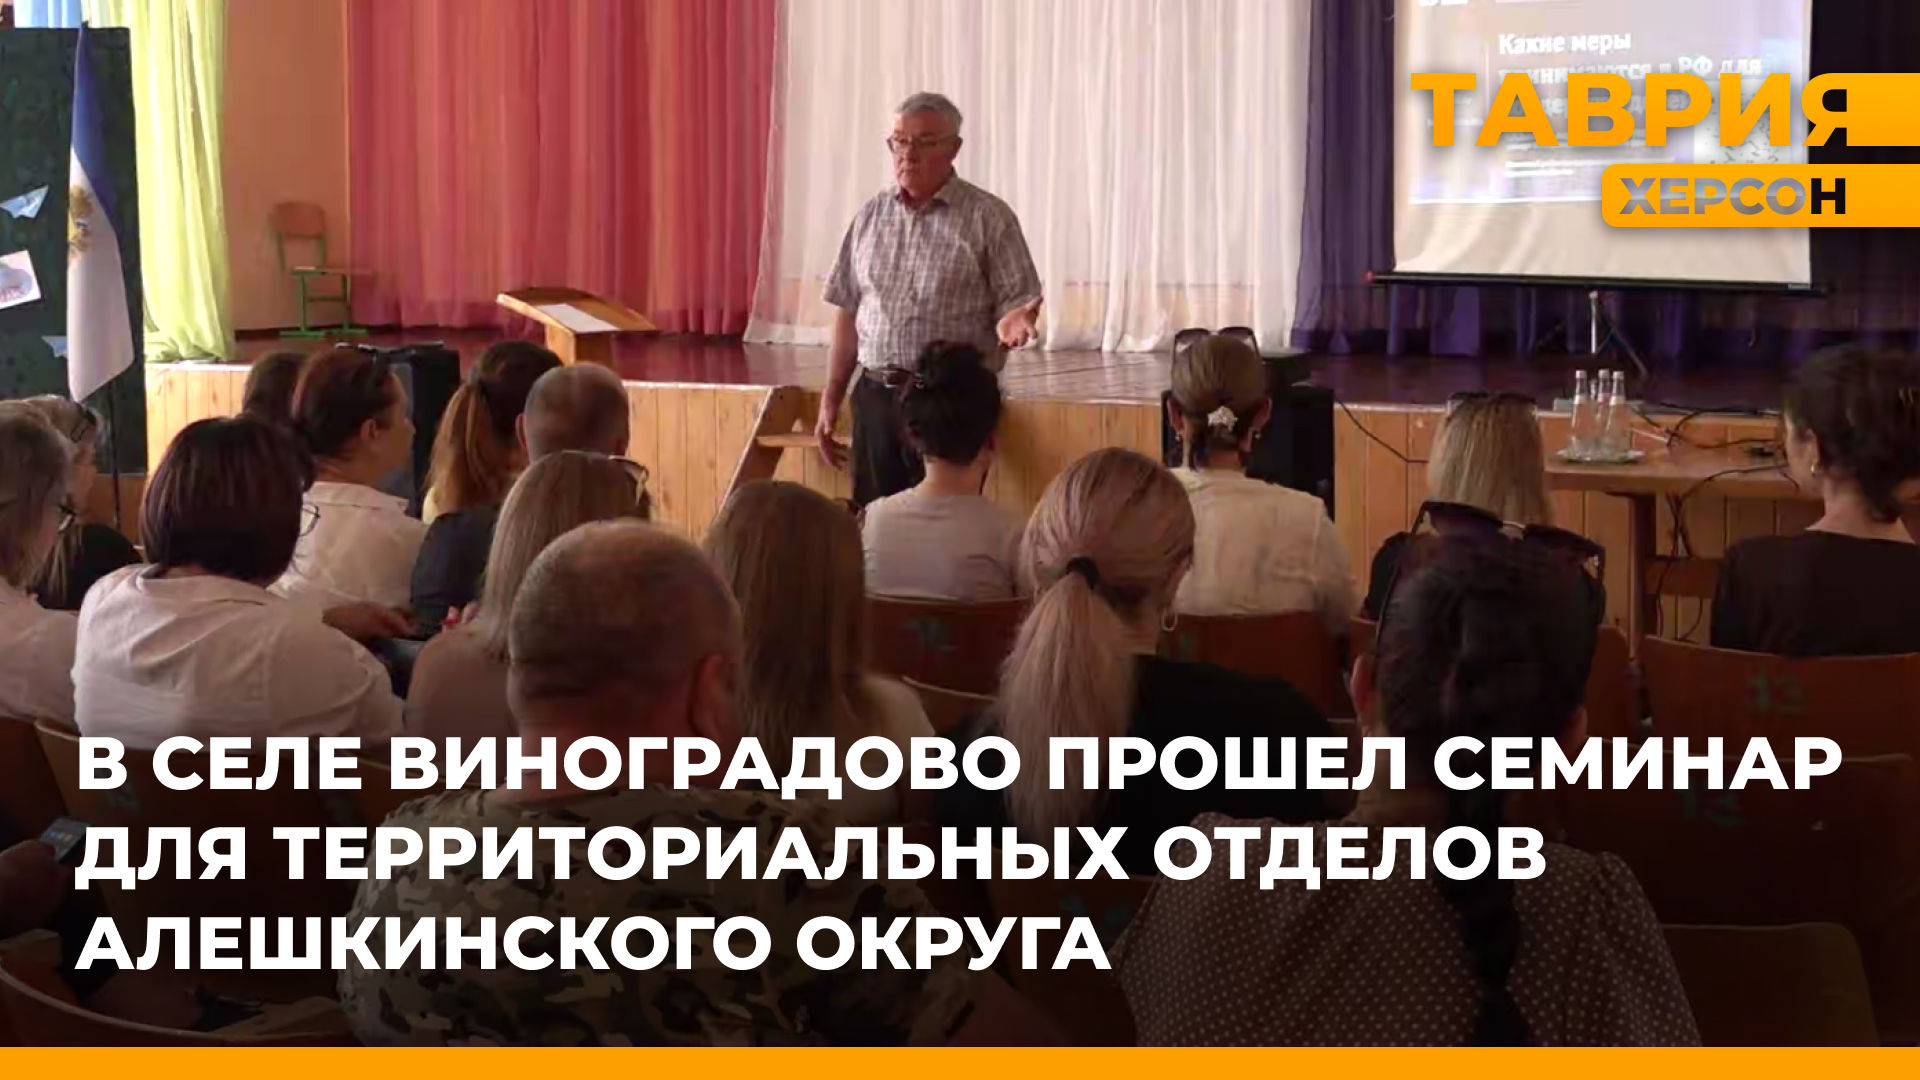 Для территориальных отделов Алешкинского округа прошел образовательный семинар